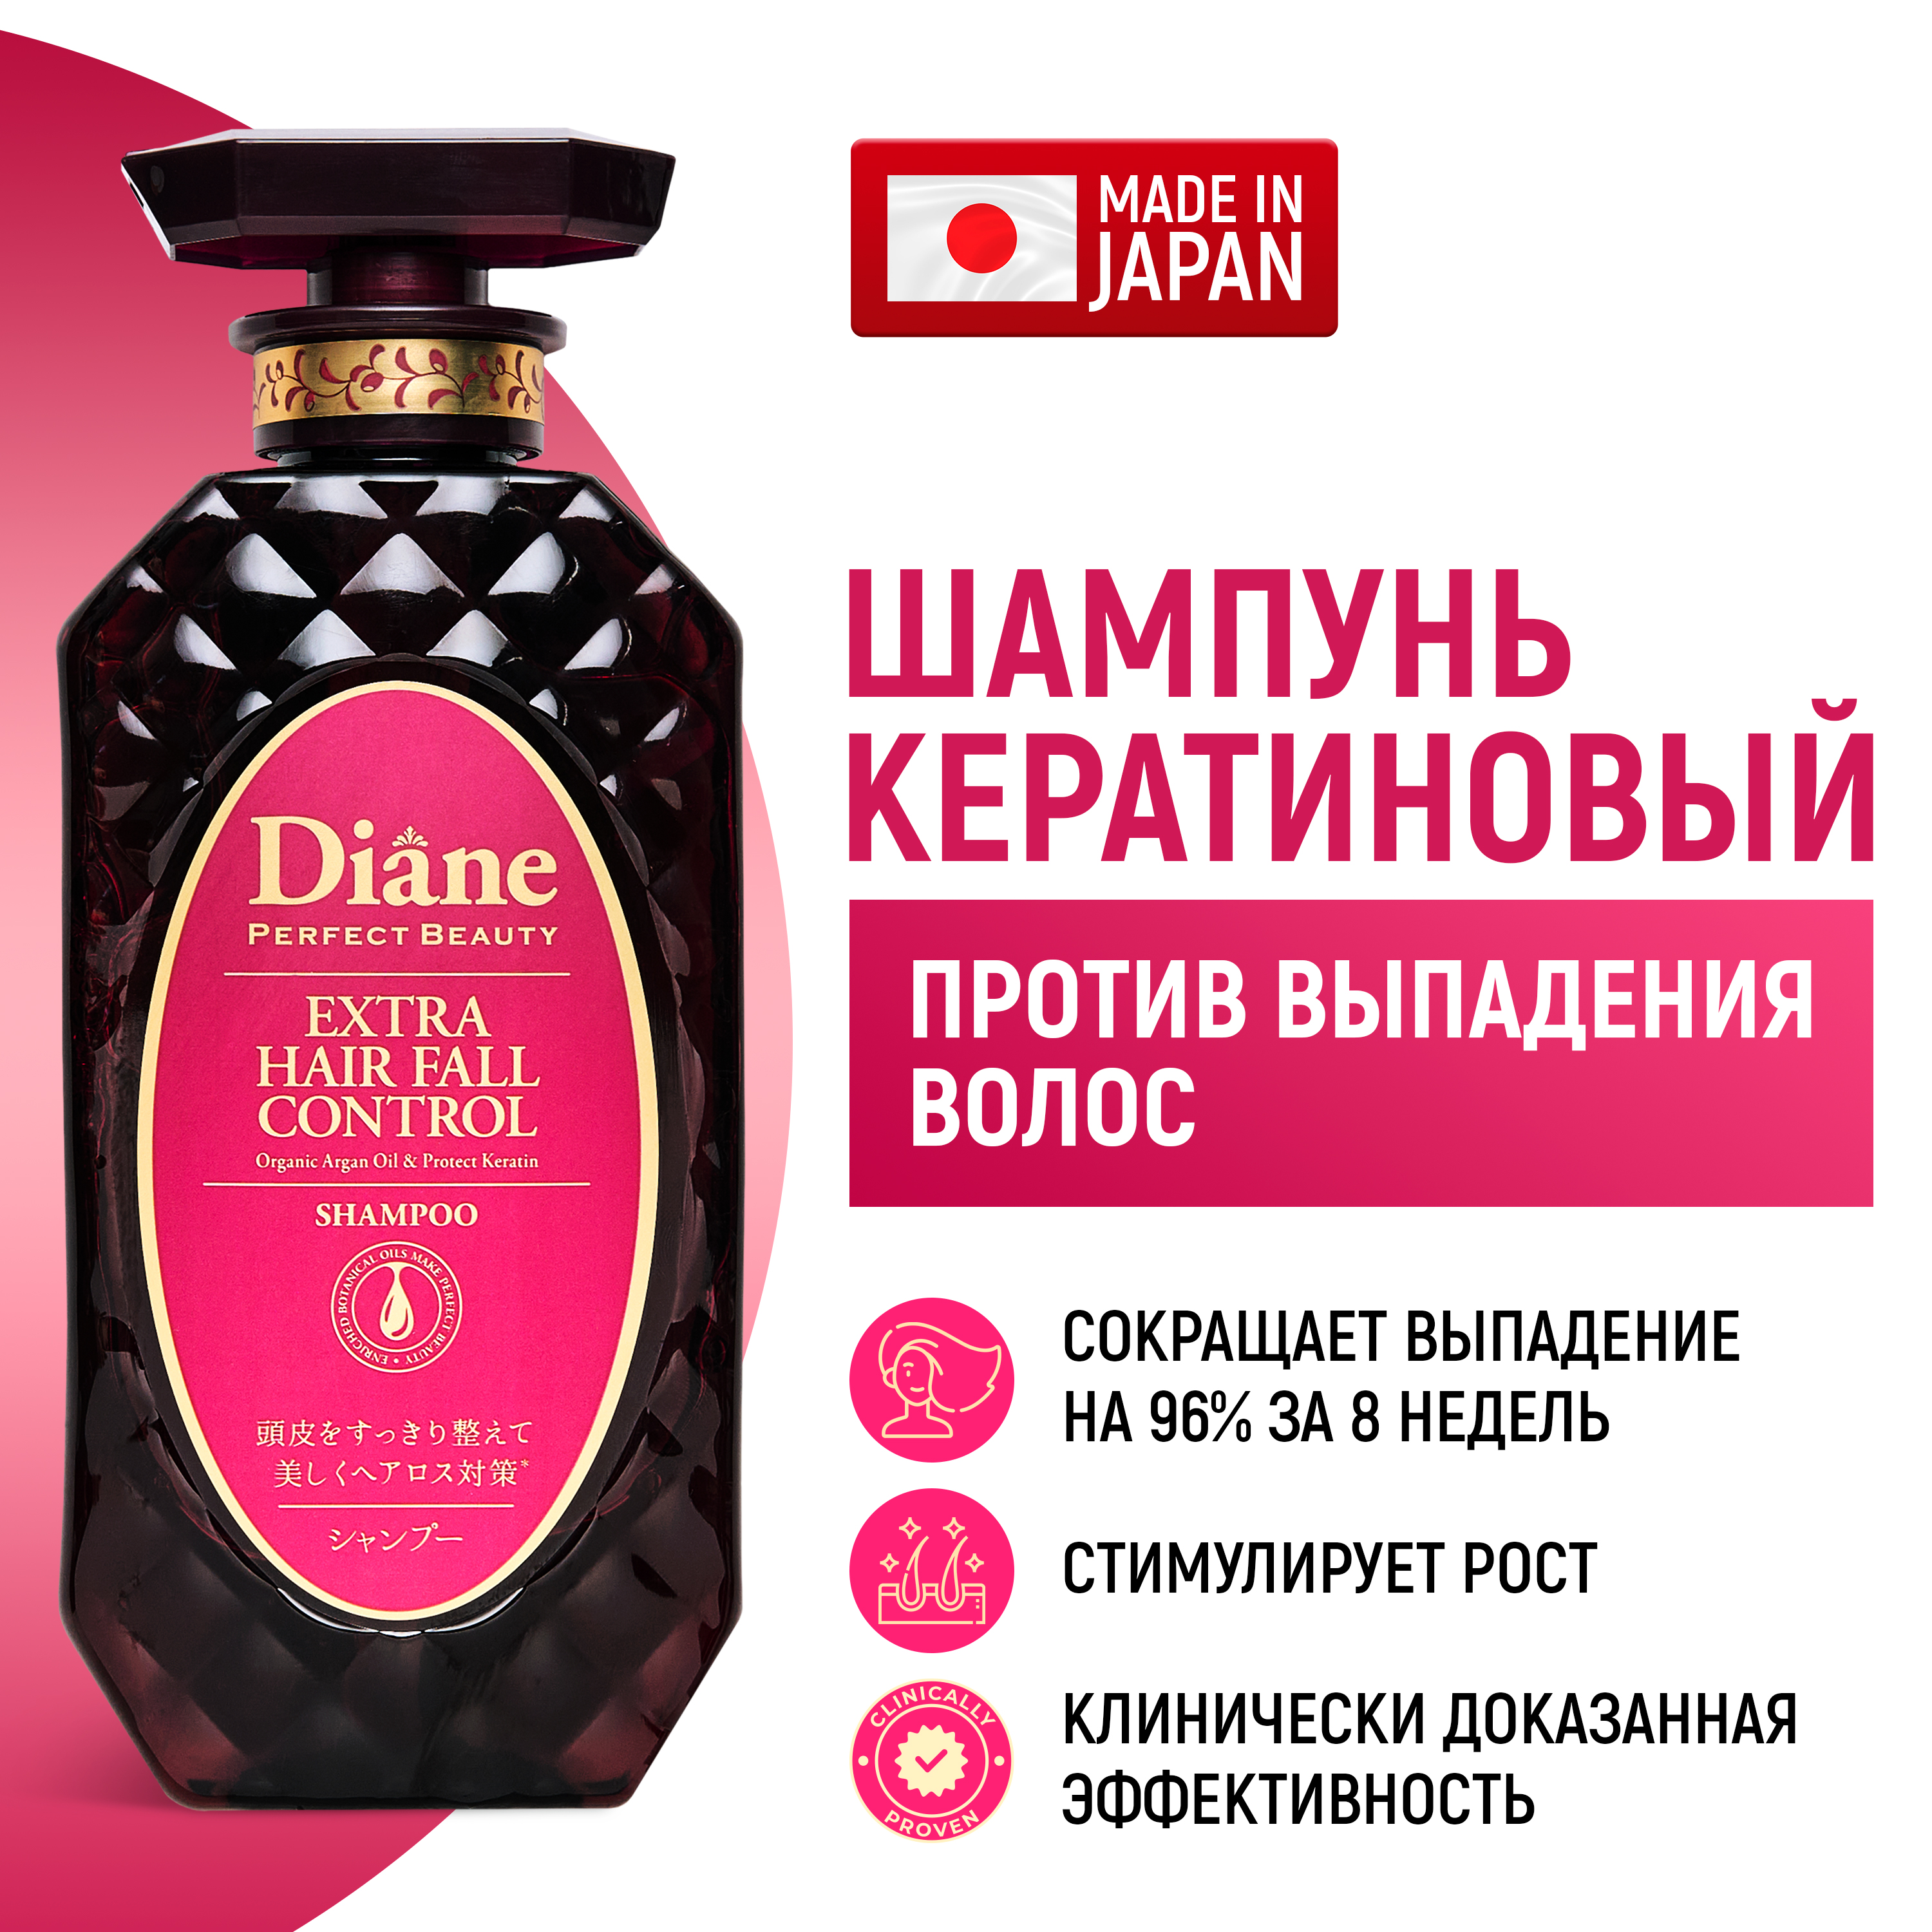 Шампунь Moist Diane Perfect Beauty кератиновый против выпадения и для роста волос 450 мл moist diane series extra volume